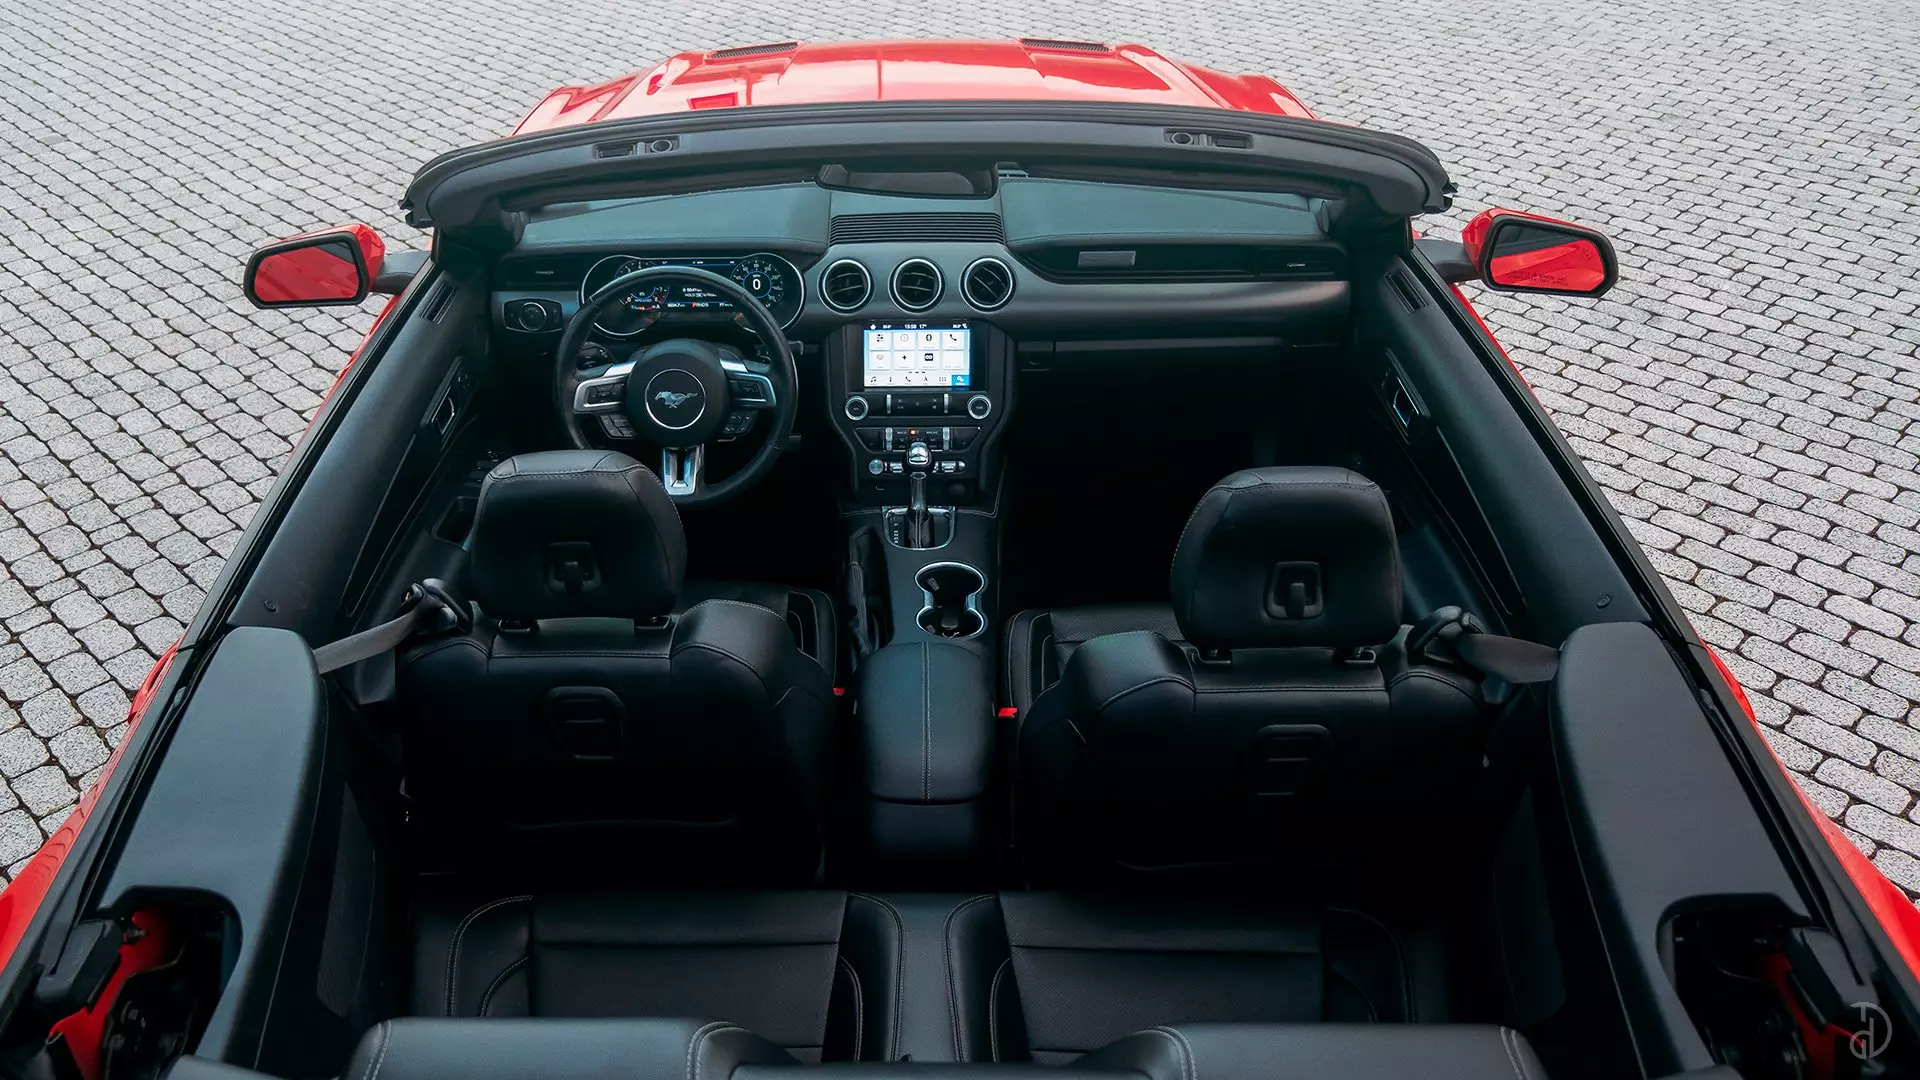 Купить Ford Mustang GT 5.0 в Санкт-Петербурге. Фото 7